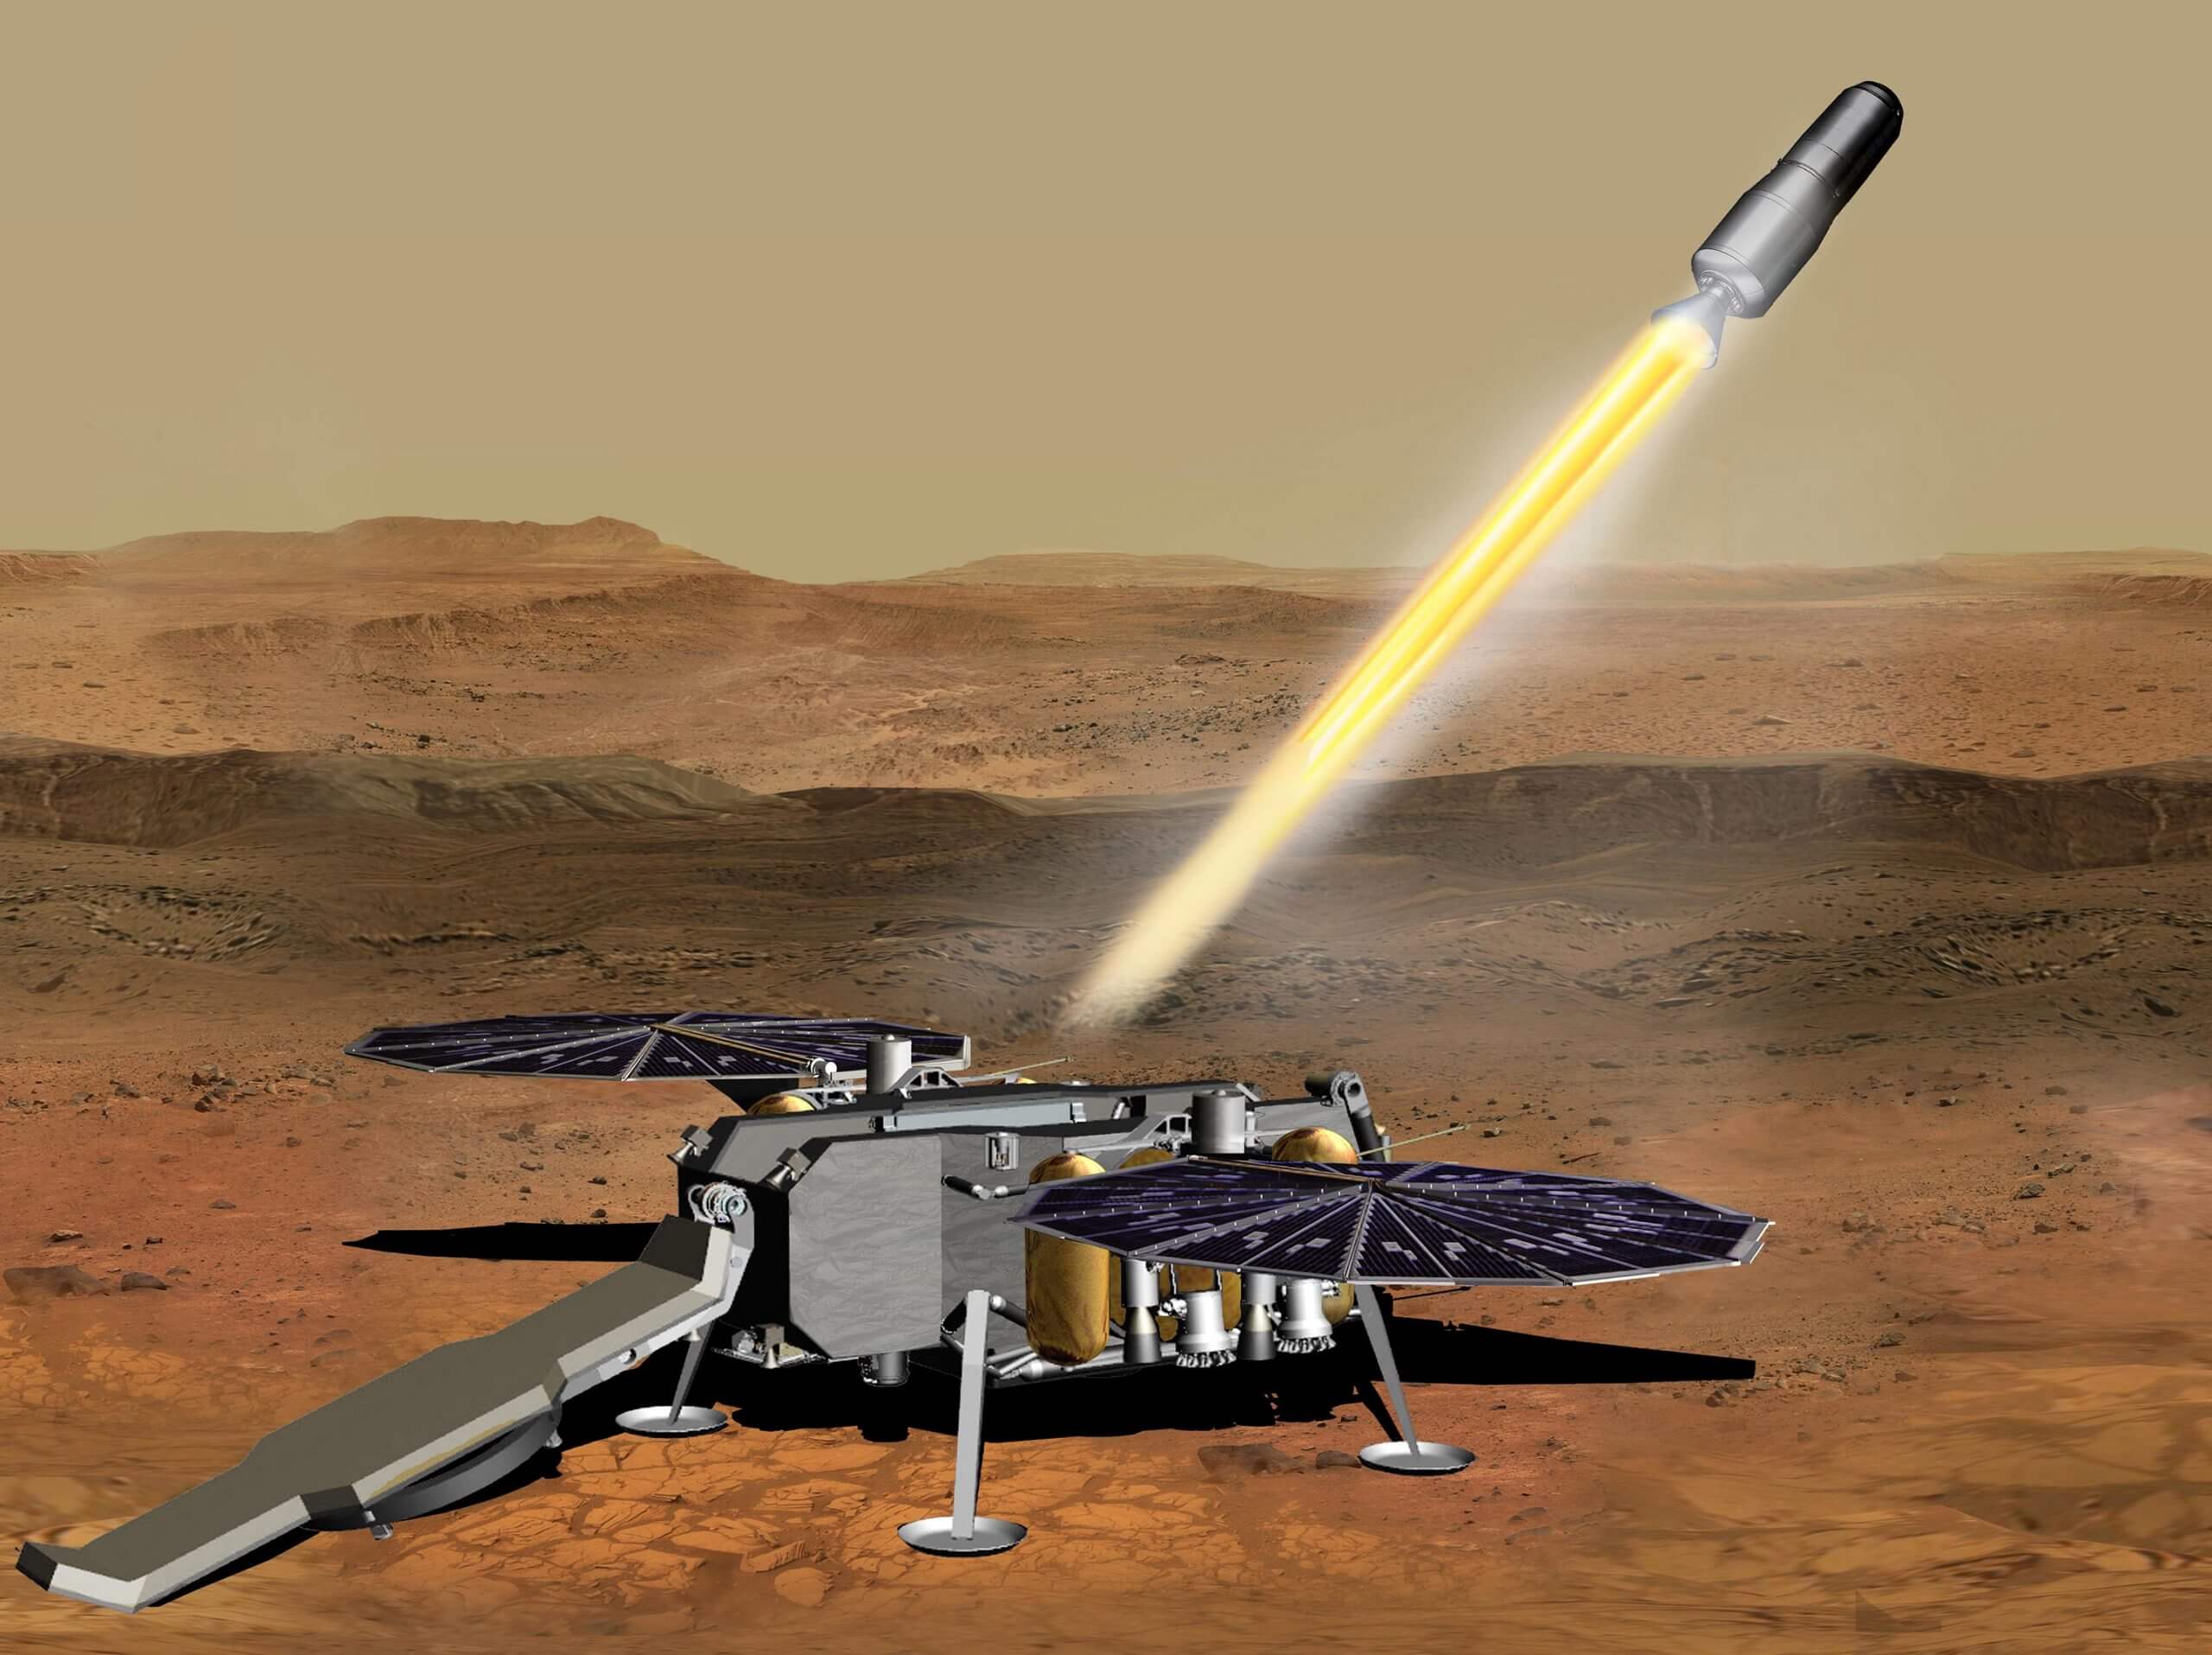 האיור הזה מראה הדמיה איך רכב הטיפוס ממאדים של נאס"א, שנושא מבחנות המכילות דגימות של סלעים וקרקע, יכול להיות משוגר מפני המאדים באחד השלבים של משימת החזרת הדגימות ממאדים. קרדיט: NASA/JPL-Caltech